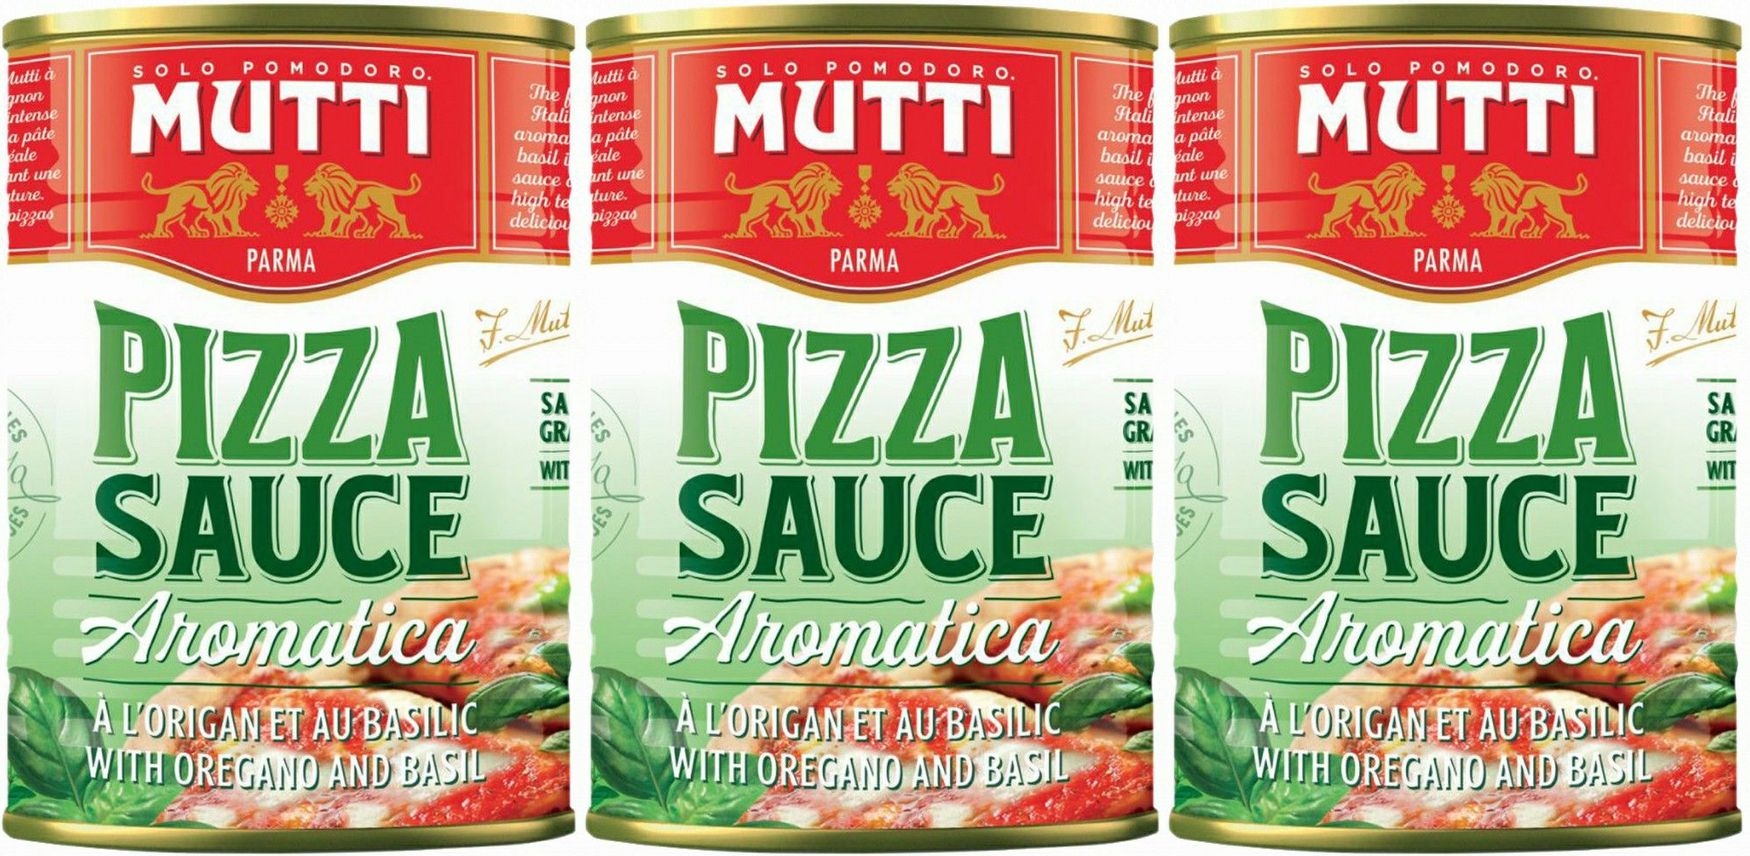 томатный соус для пиццы мутти классический 400 грамм фото 21